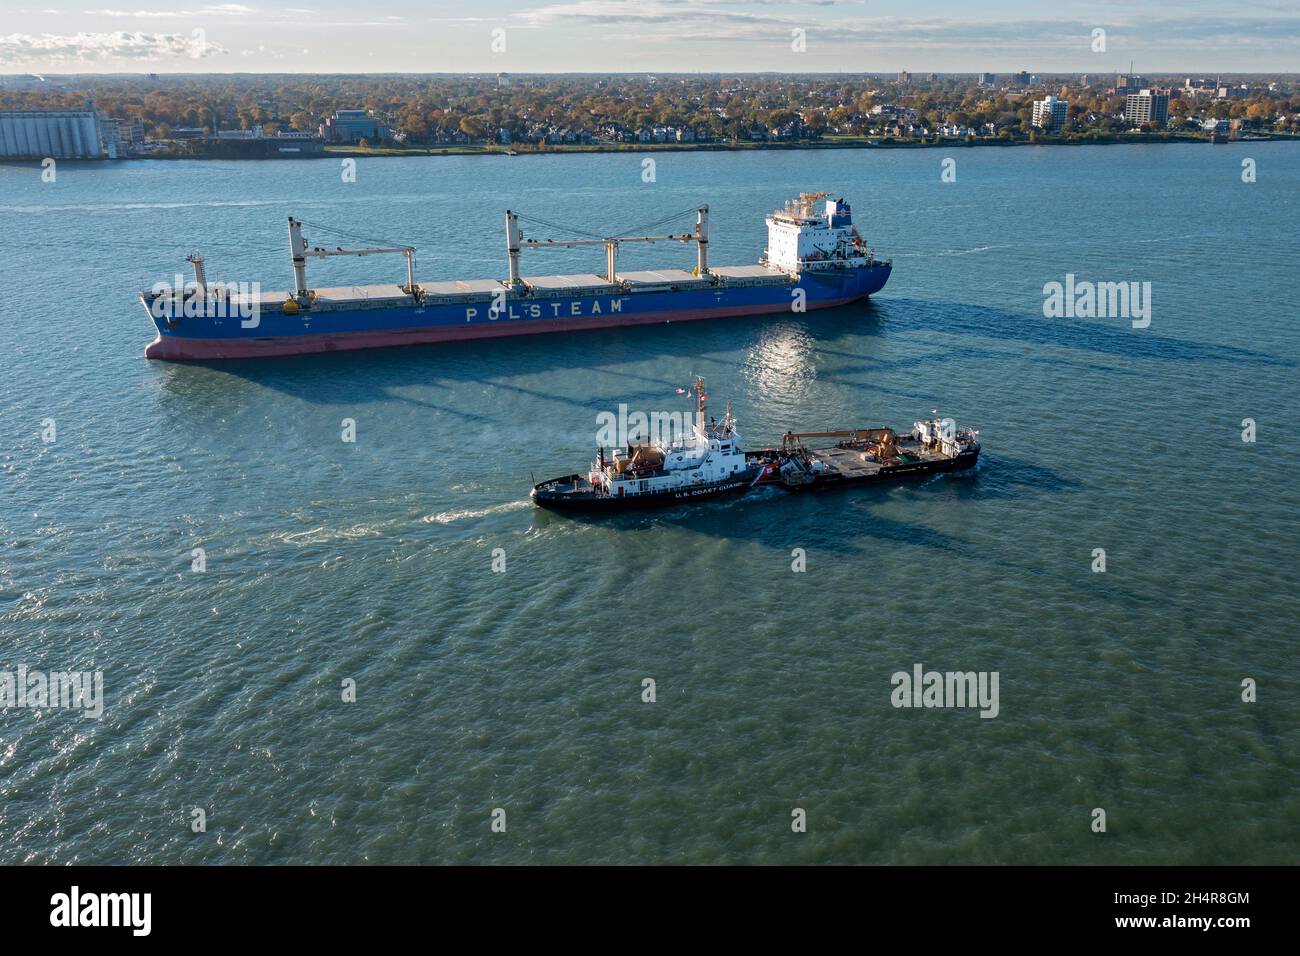 Detroit, Michigan - Una nave della Guardia Costiera degli Stati Uniti, che spinge una chiatta, passa la Lubie, una nave oceanica ancorata nel fiume Detroit. Il Lubie, di proprietà di Foto Stock